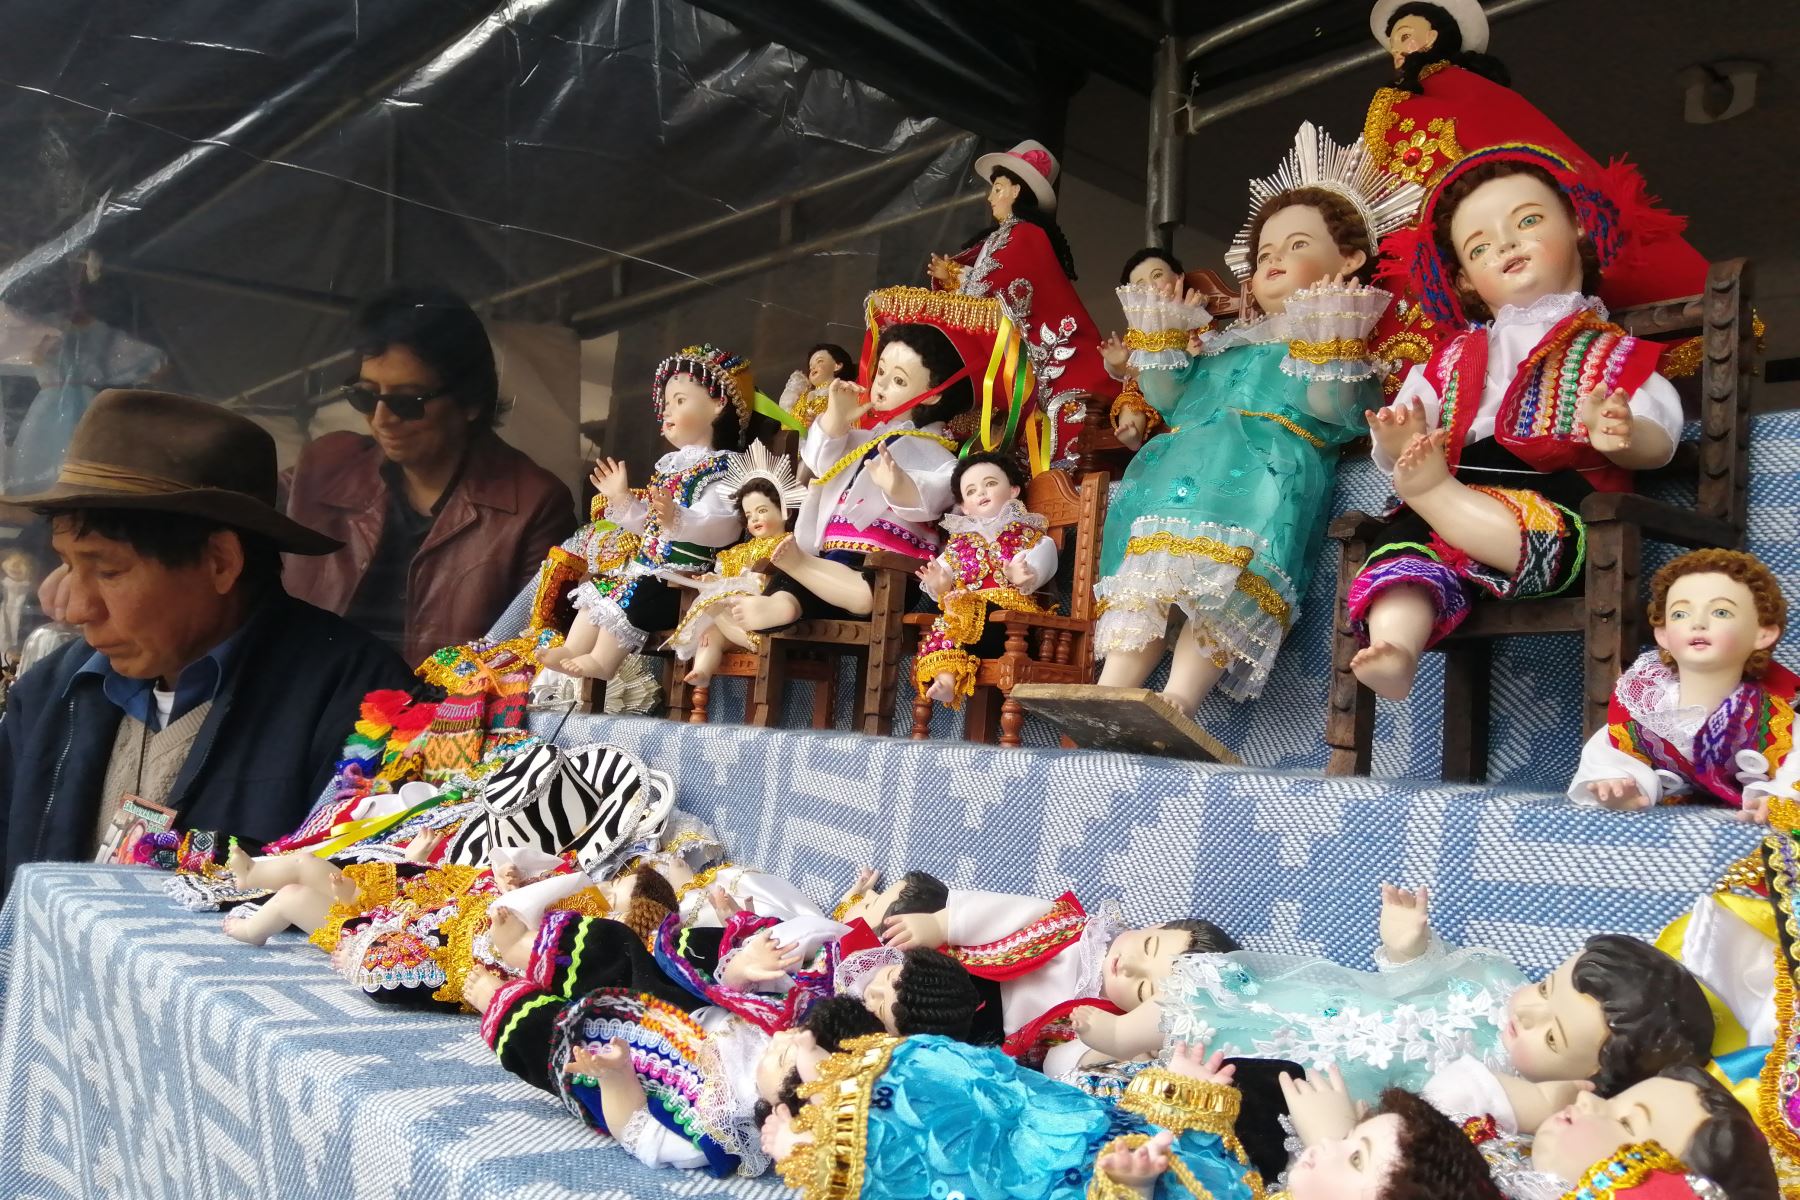 Cada 24 de diciembre, la Plaza de Armas de la ciudad del Cusco se convierte en el epicentro de una de las mayores exhibiciones de arte popular alusivo a la Navidad. La feria Santurantikuy se convierte en expresión cabal del sincretismo religioso-cultural cristiano y andino que identifica a la Ciudad Imperial. ANDINA/Percy Hurtado Santillán